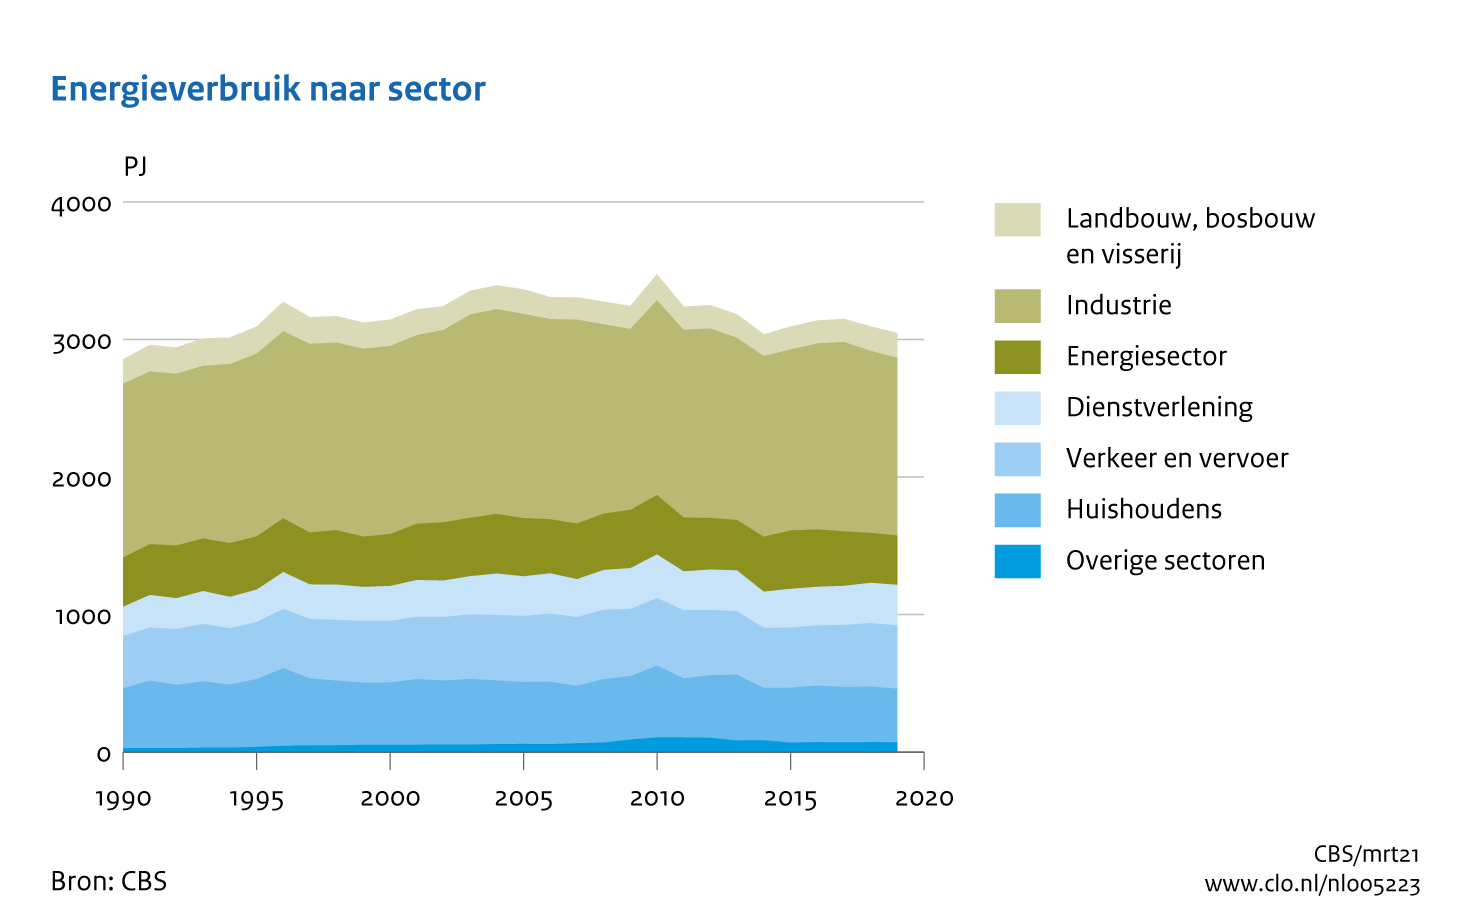 Figuur Energieverbruik per sector 1990-2019. In de rest van de tekst wordt deze figuur uitgebreider uitgelegd.